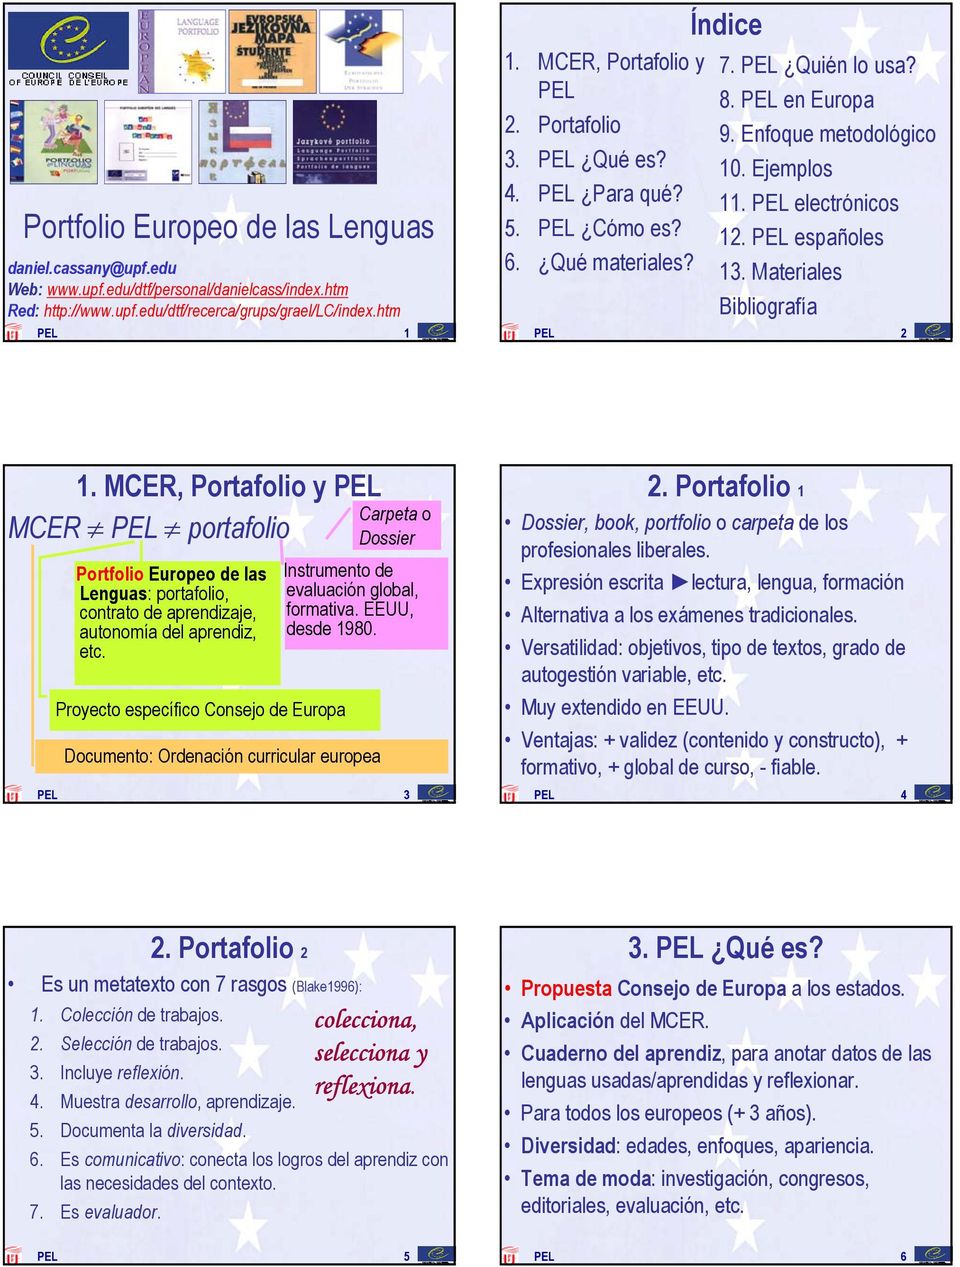 PEL electrónicos 12. PEL españoles 13. Materiales Bibliografía PEL 2 1.